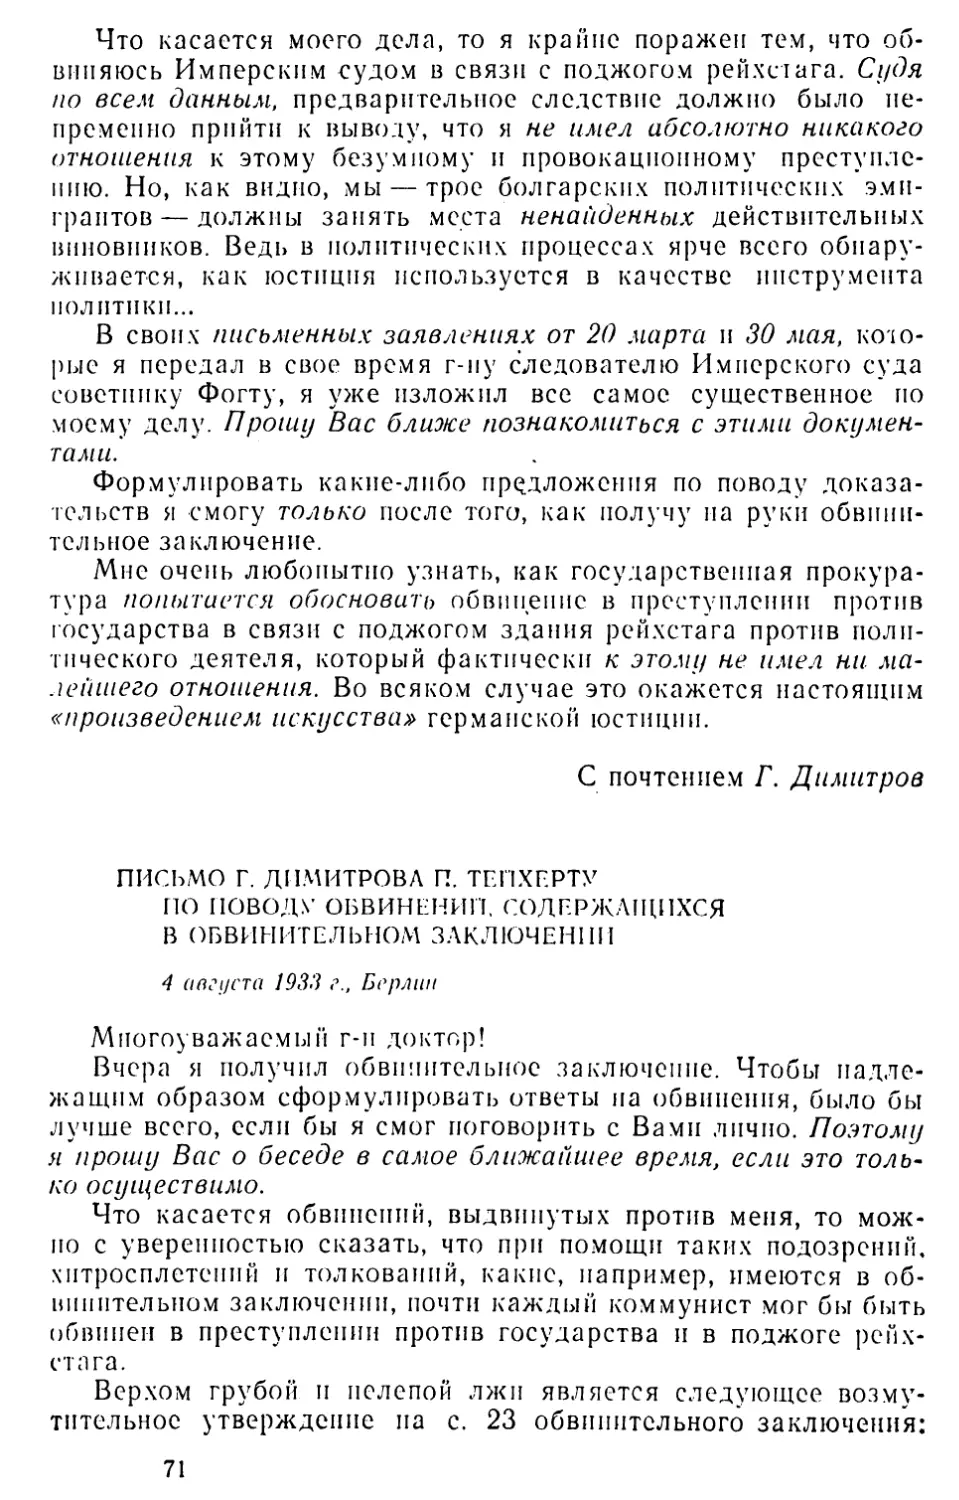 Письмо Г. Димитрова П. Тейхерту по поводу обвинений, содержащихся в обвинительном заключении. 4 августа 1933 г